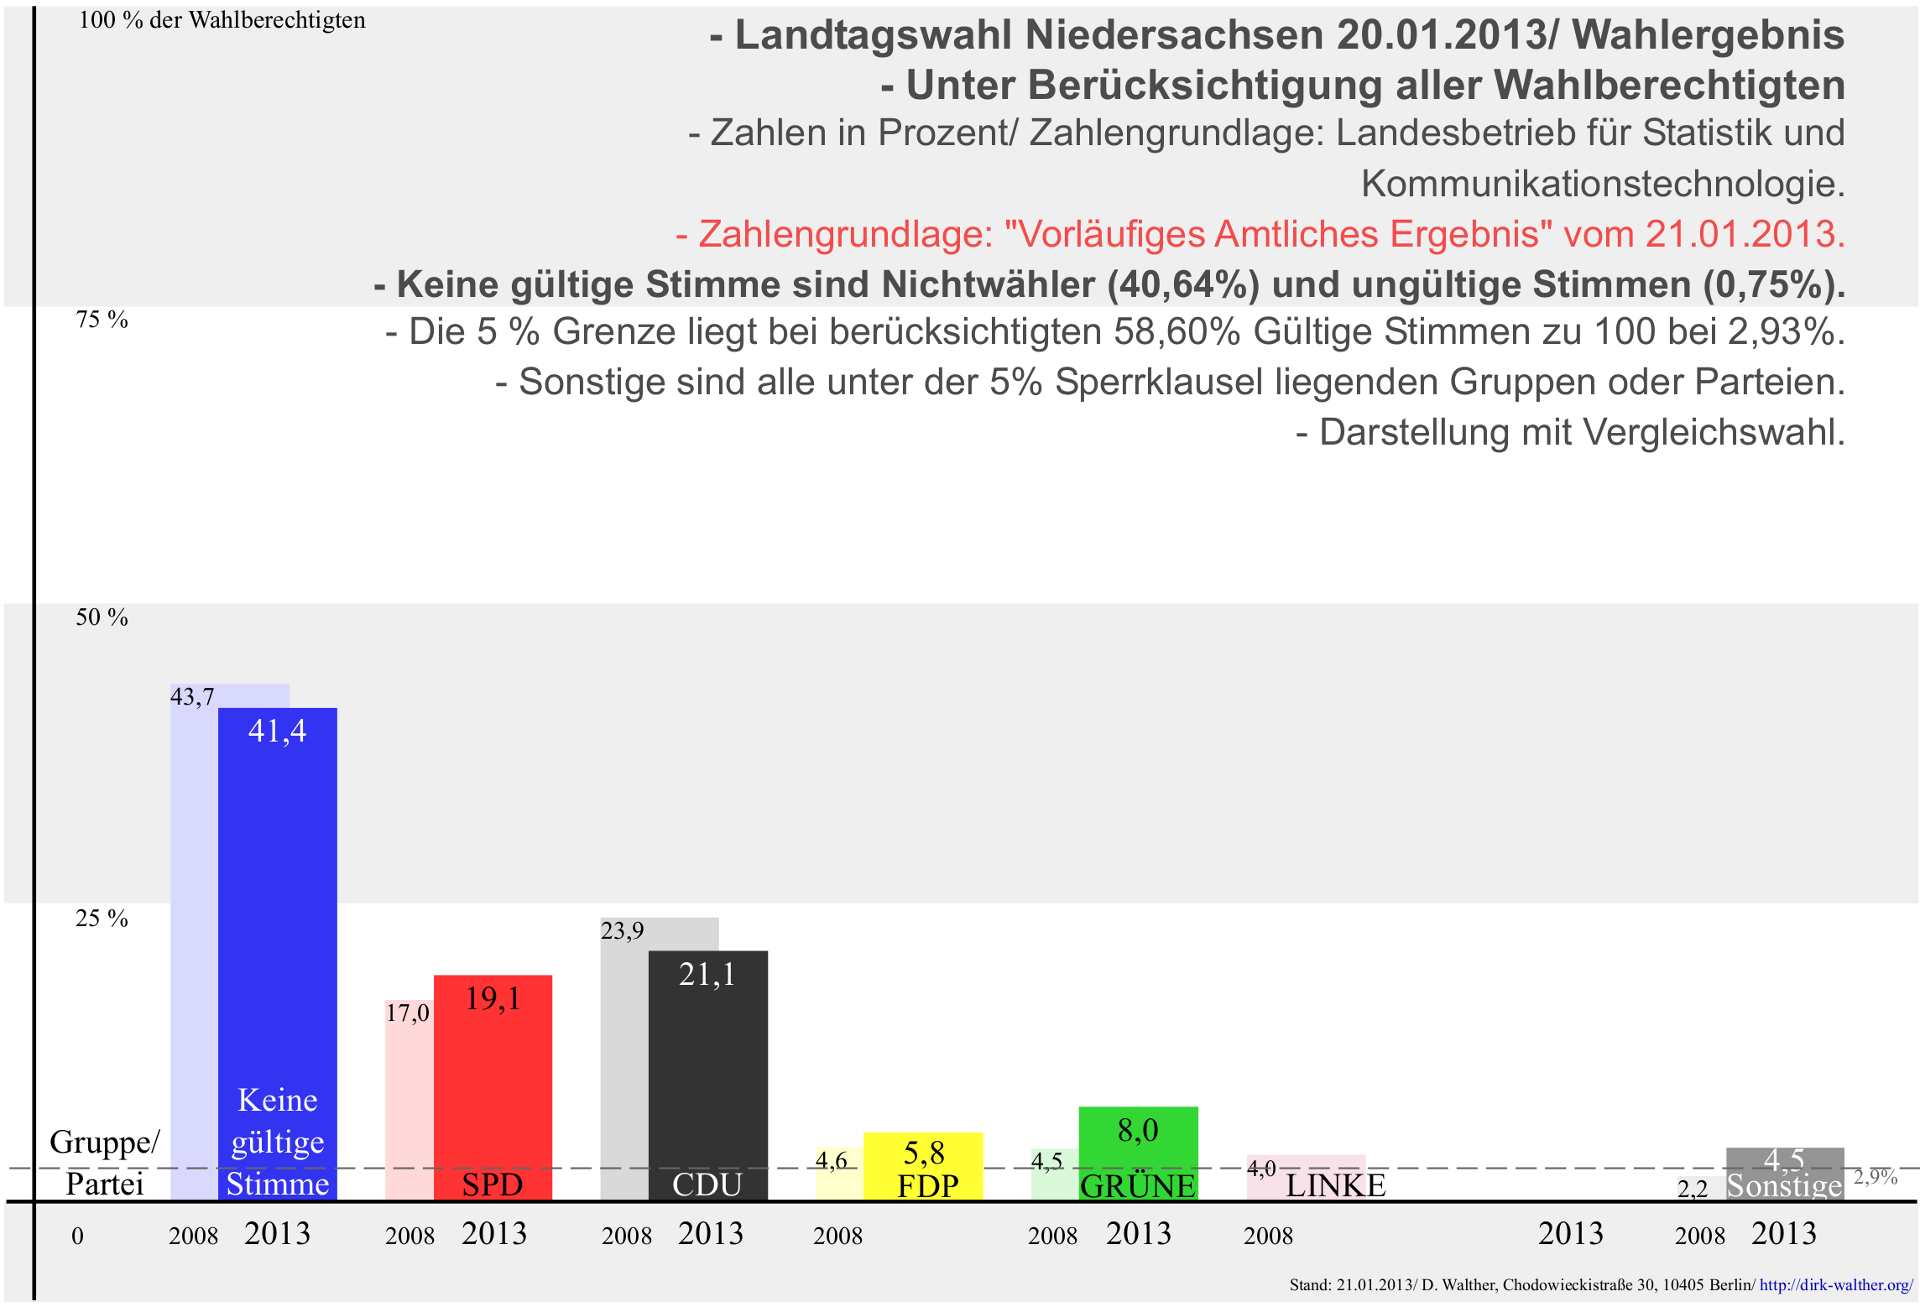 BRD Landtagswahl in Niedersachsen am 20.01.2013 mit Nichtwählern. Diagramm